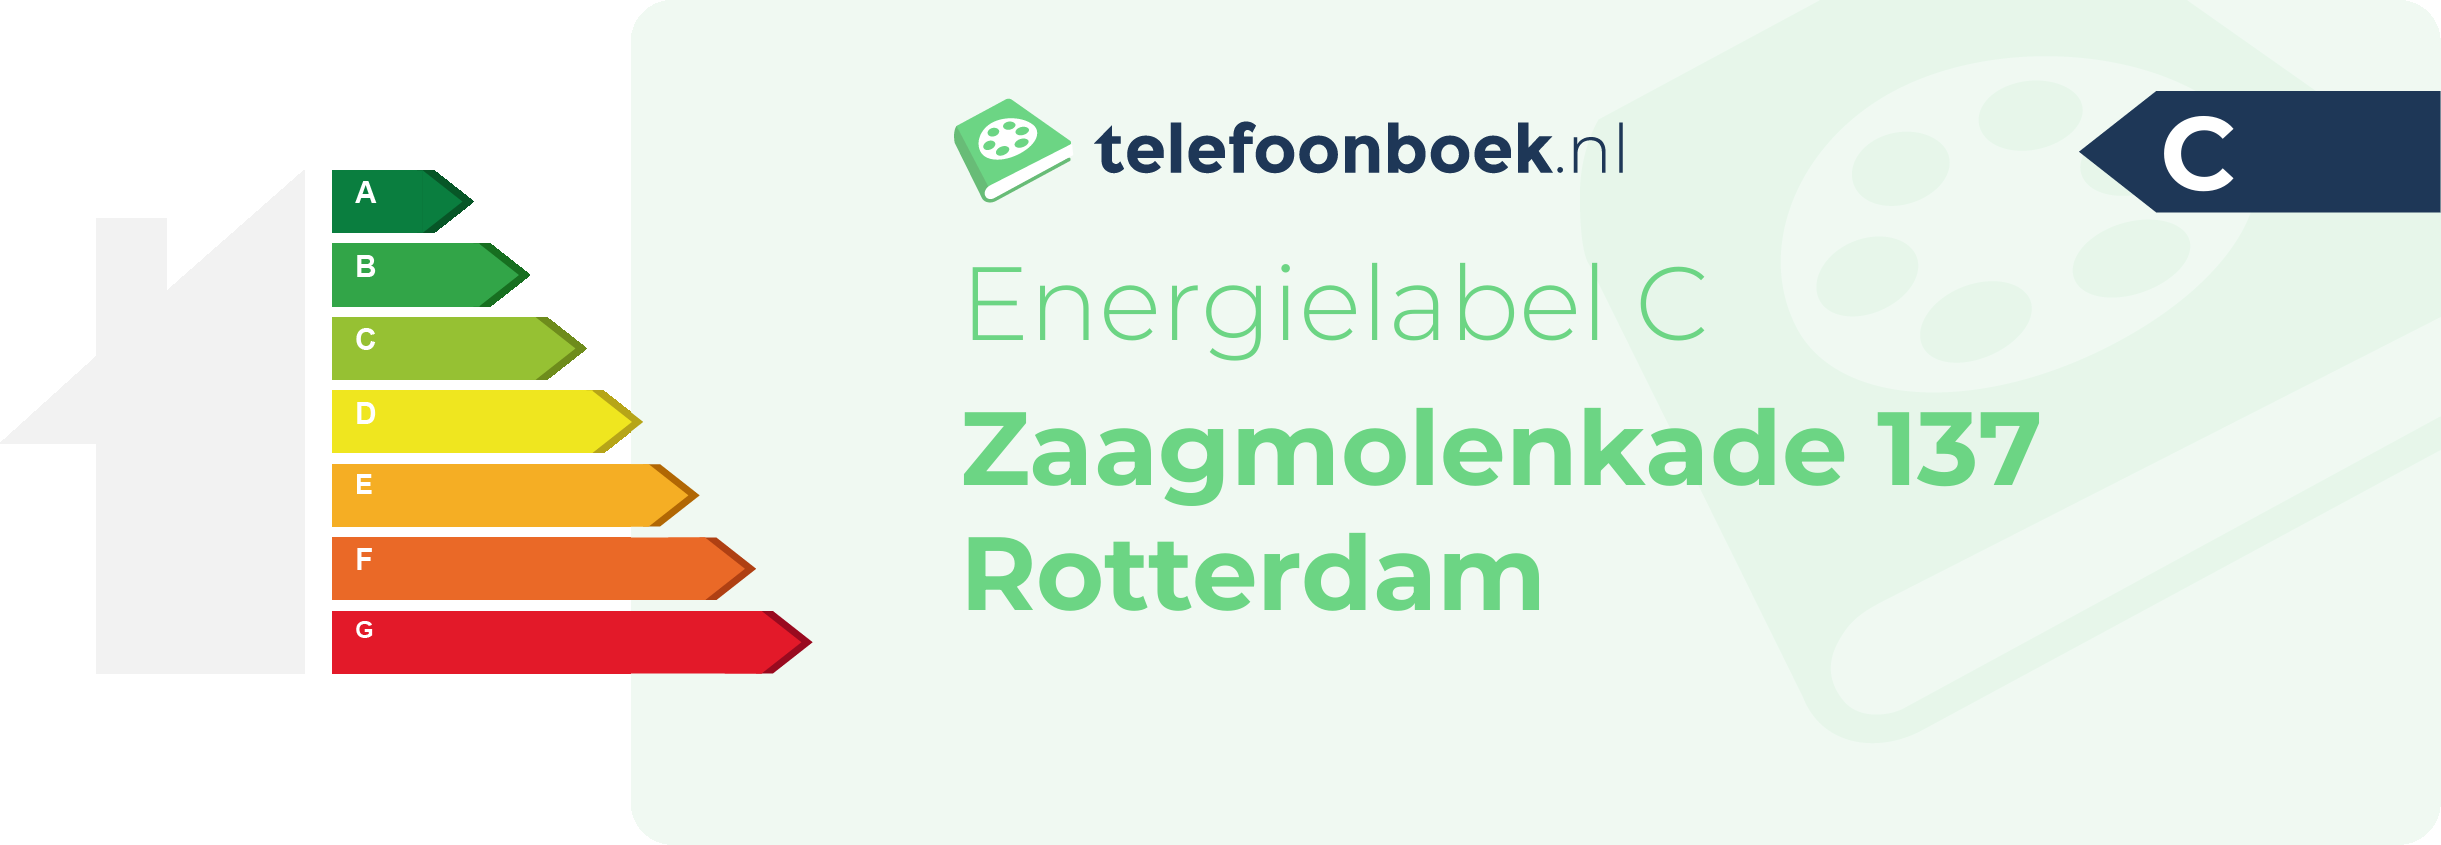 Energielabel Zaagmolenkade 137 Rotterdam